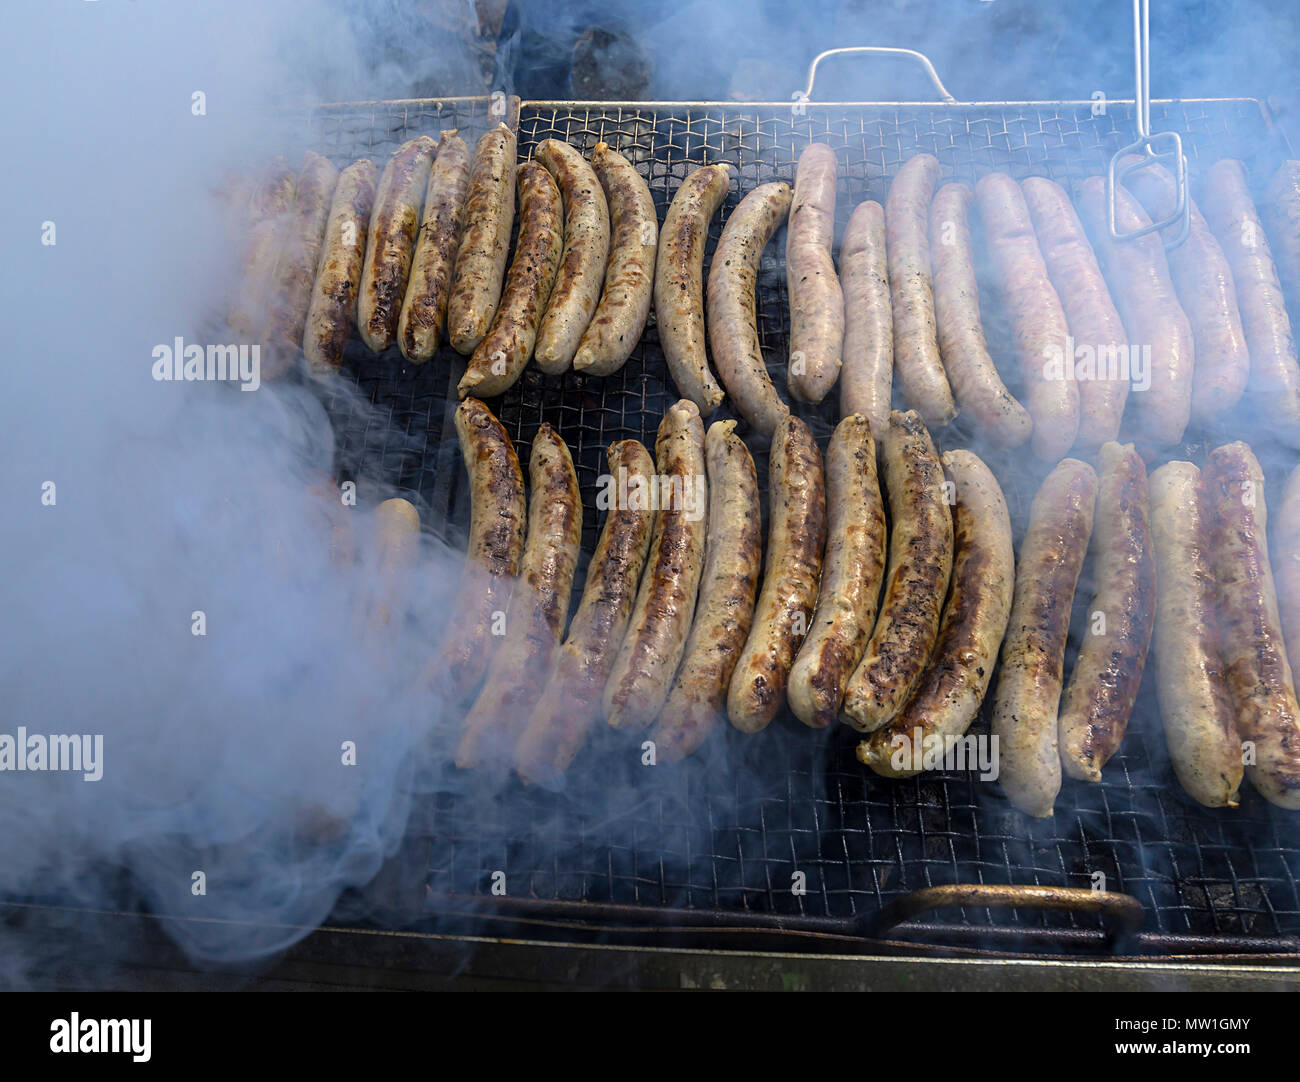 Gegrillte Würstchen in Rauch gehüllt, Bayern, Deutschland Stockfoto